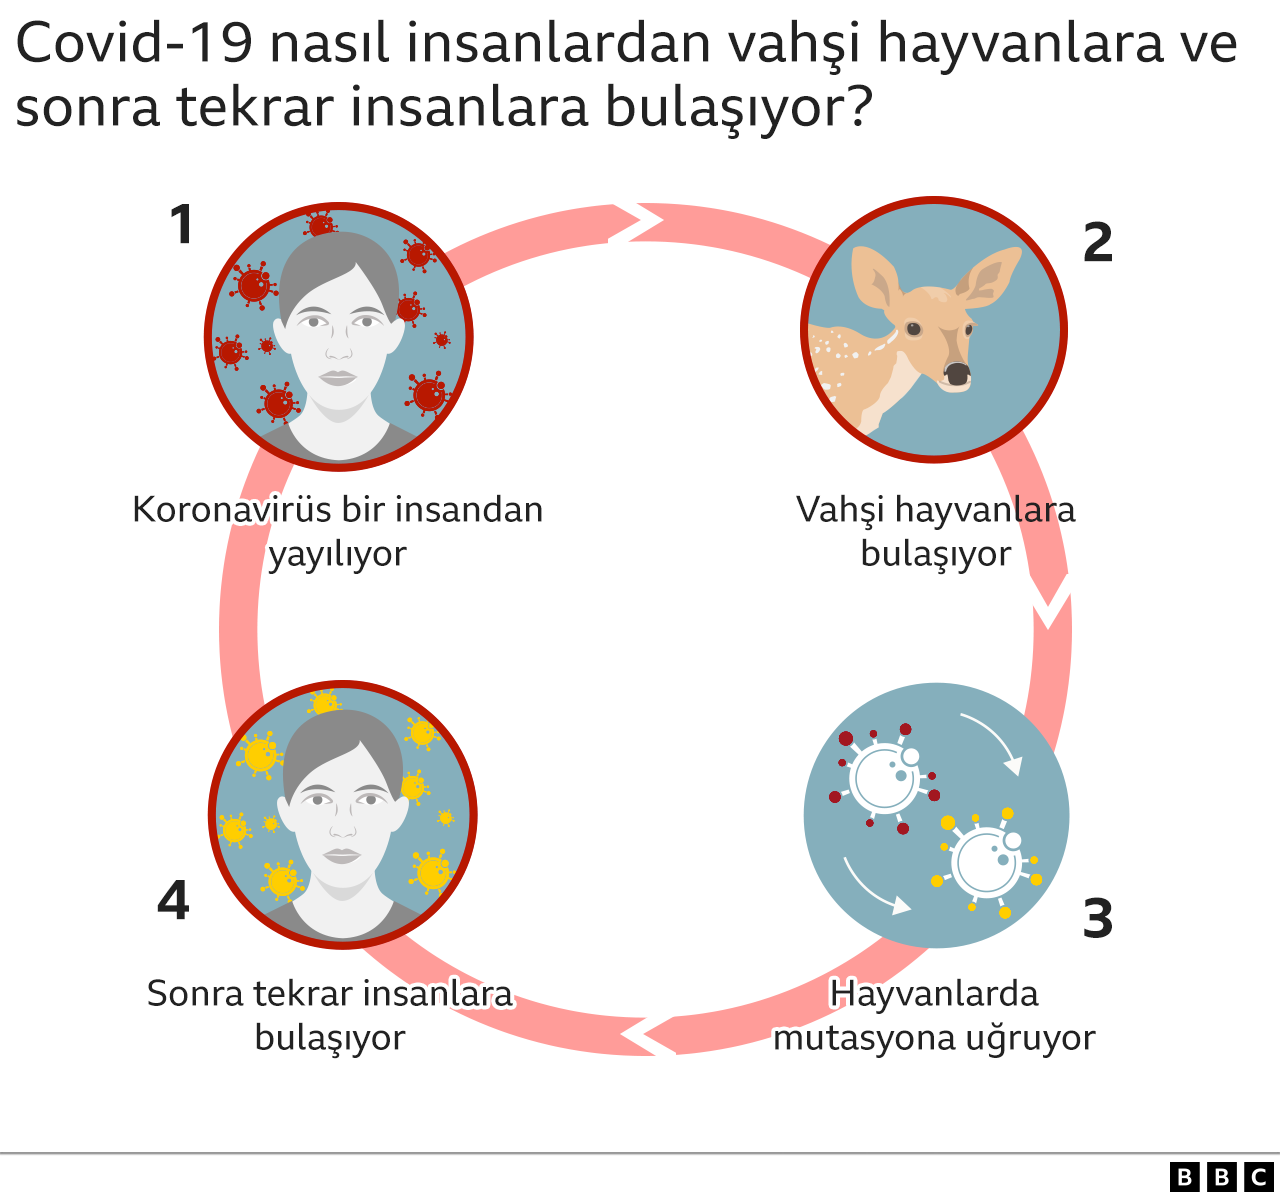 Covid: Koronavirüs hayvanlarda mutasyona uğrayıp yeni bir salgına yol açabilir mi?